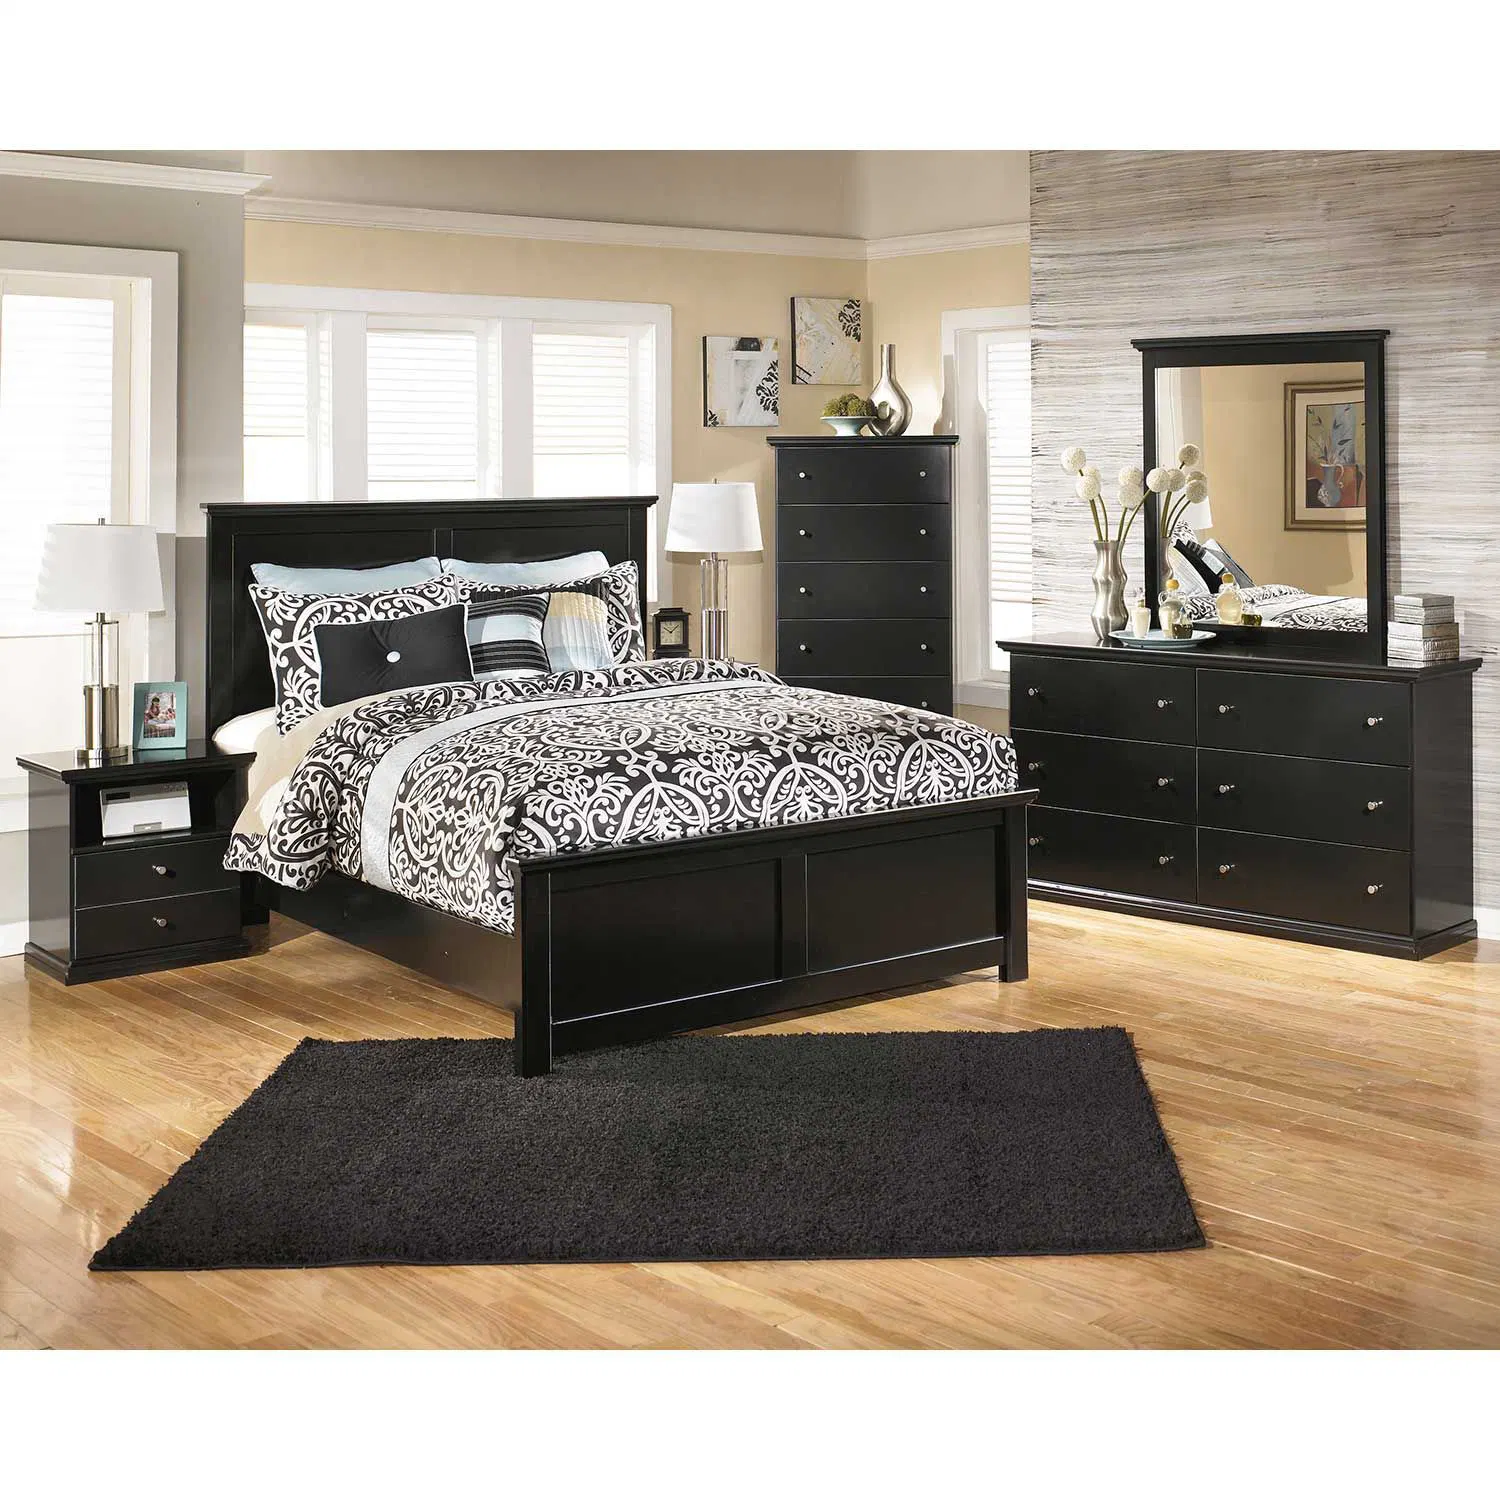 China pintado de negro al por mayor de 5 piezas de madera juego de dormitorio muebles incluyen Single Doble cama King Size que componen Vantity armario vestidor